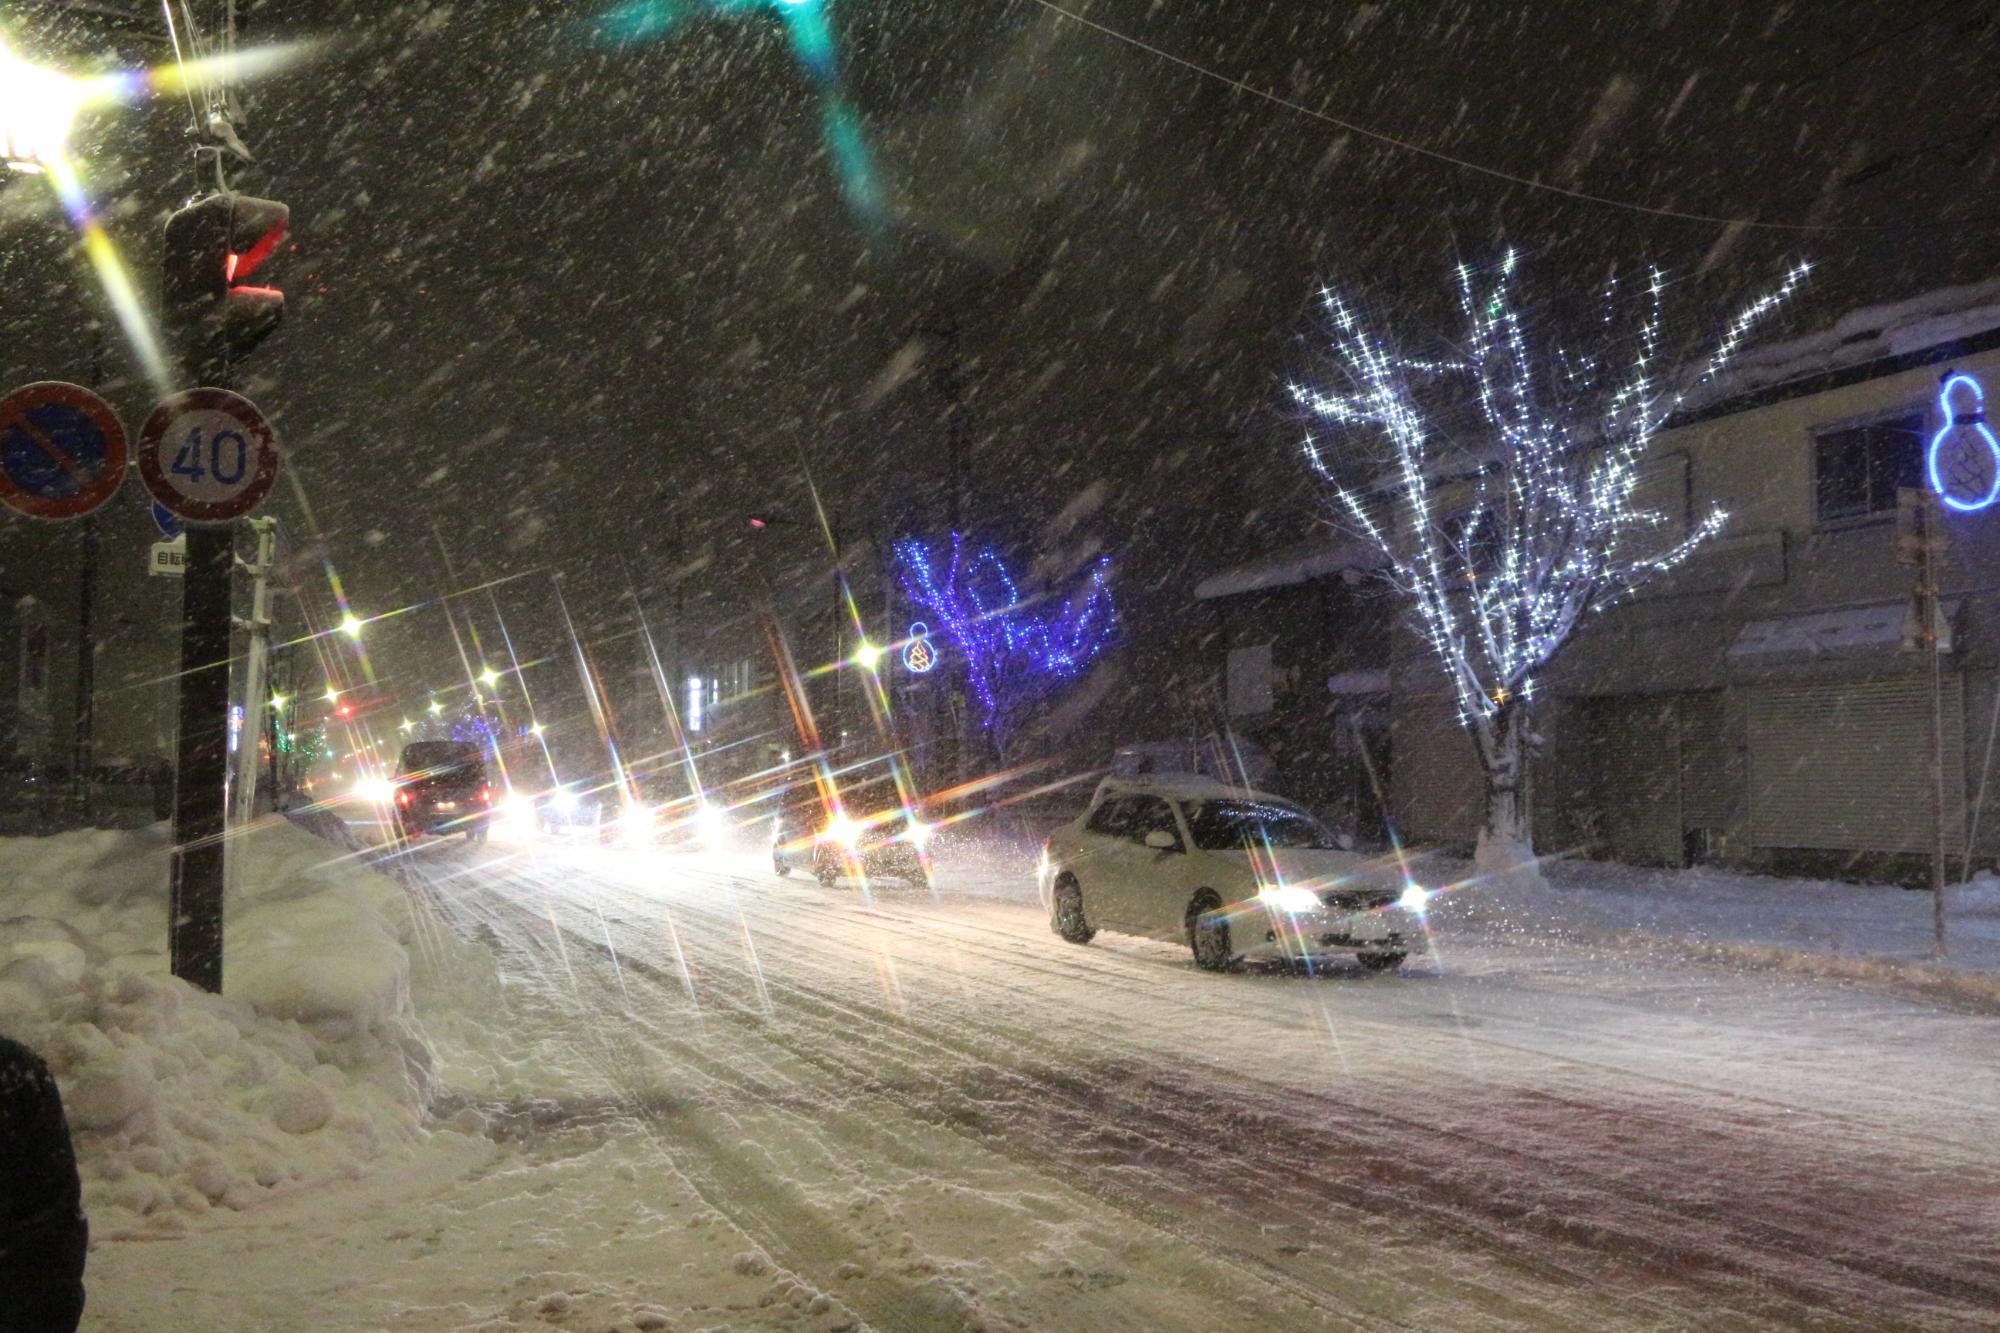 雪が降り積もるなか、街路樹に装飾された紫色や白色に光るイルミネーションの通りを車が走行している様子の写真